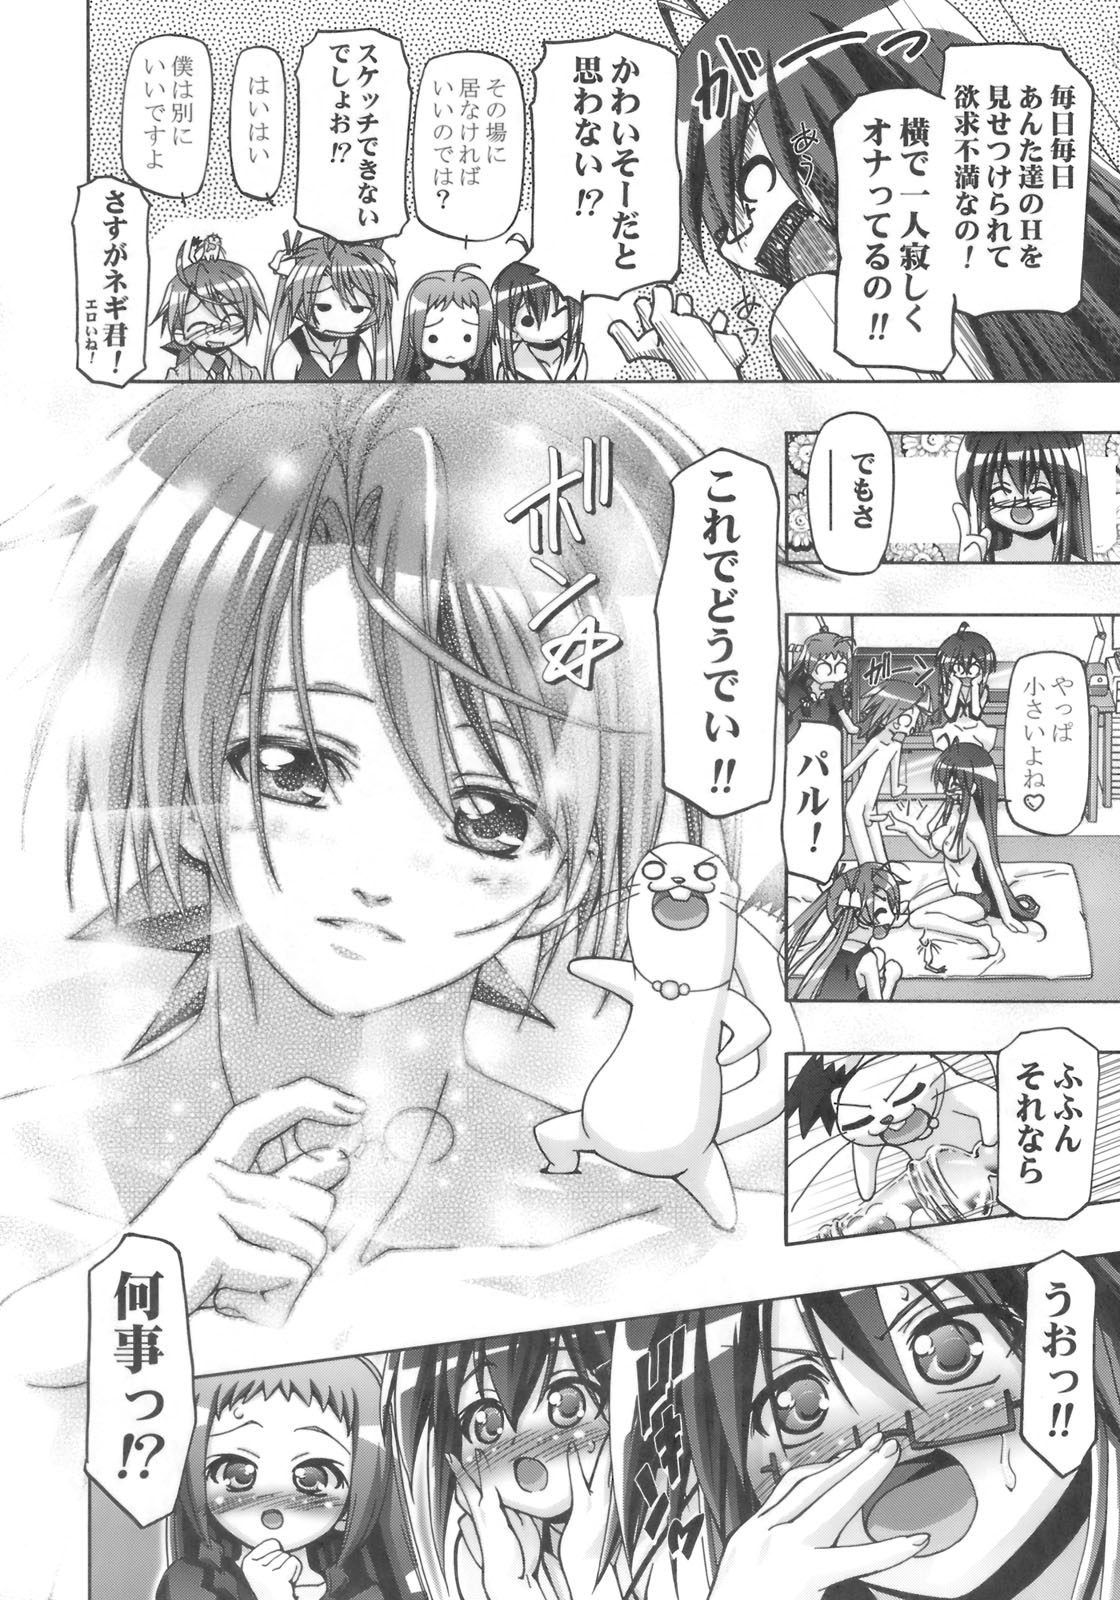 (SC39) [Gambler Club (Kousaka Jun)] Mahora Gakuen Tyuutoubu 3-A 3 Jikanme Negi X Haruna (Mahou Sensei Negima!) page 5 full